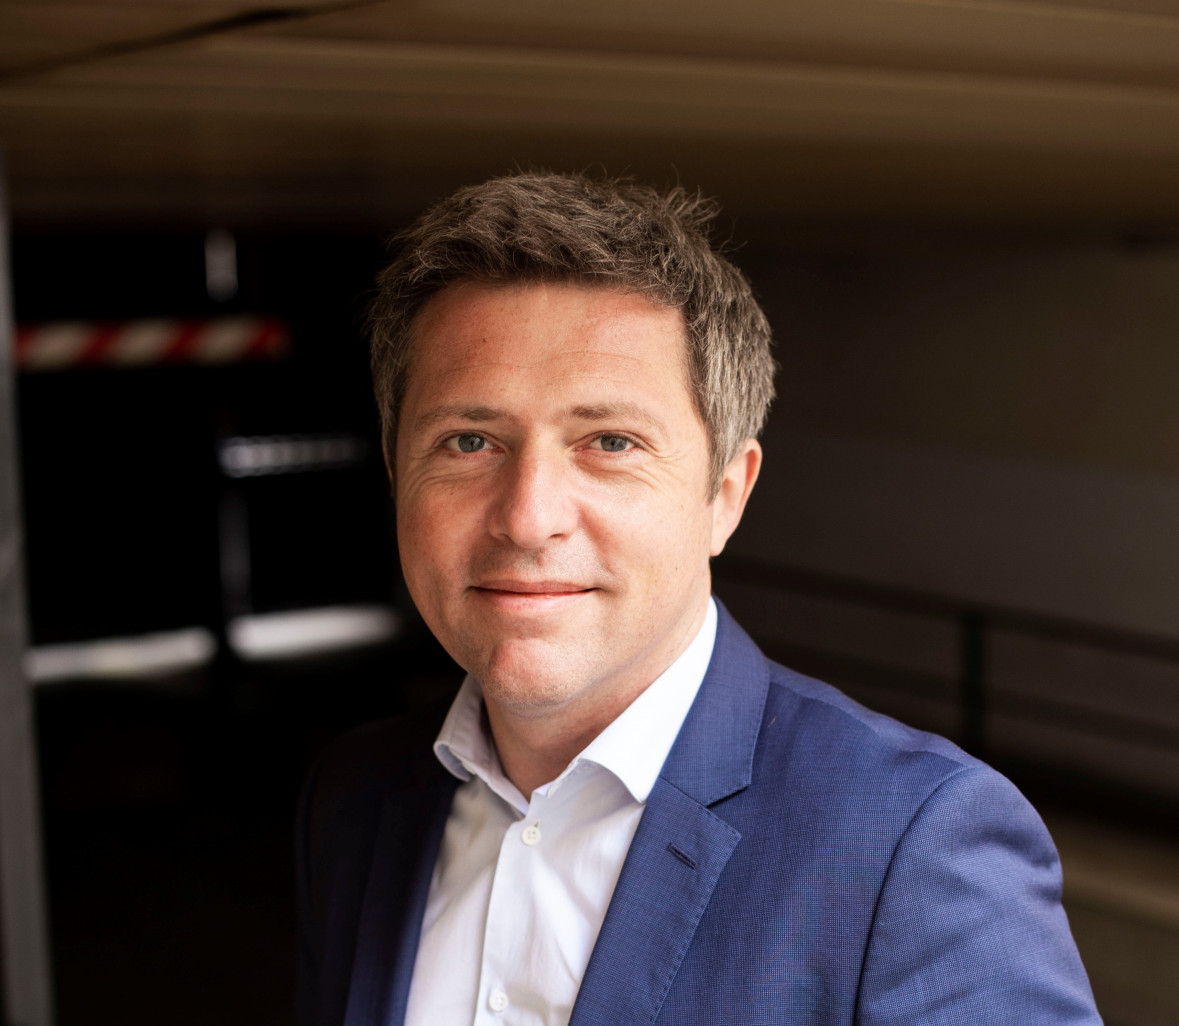 Sébastien Maire dirige l'association France villes durables, créée en 2019 et présidée par le maire de Dunkerque, Patrice Vergriete.